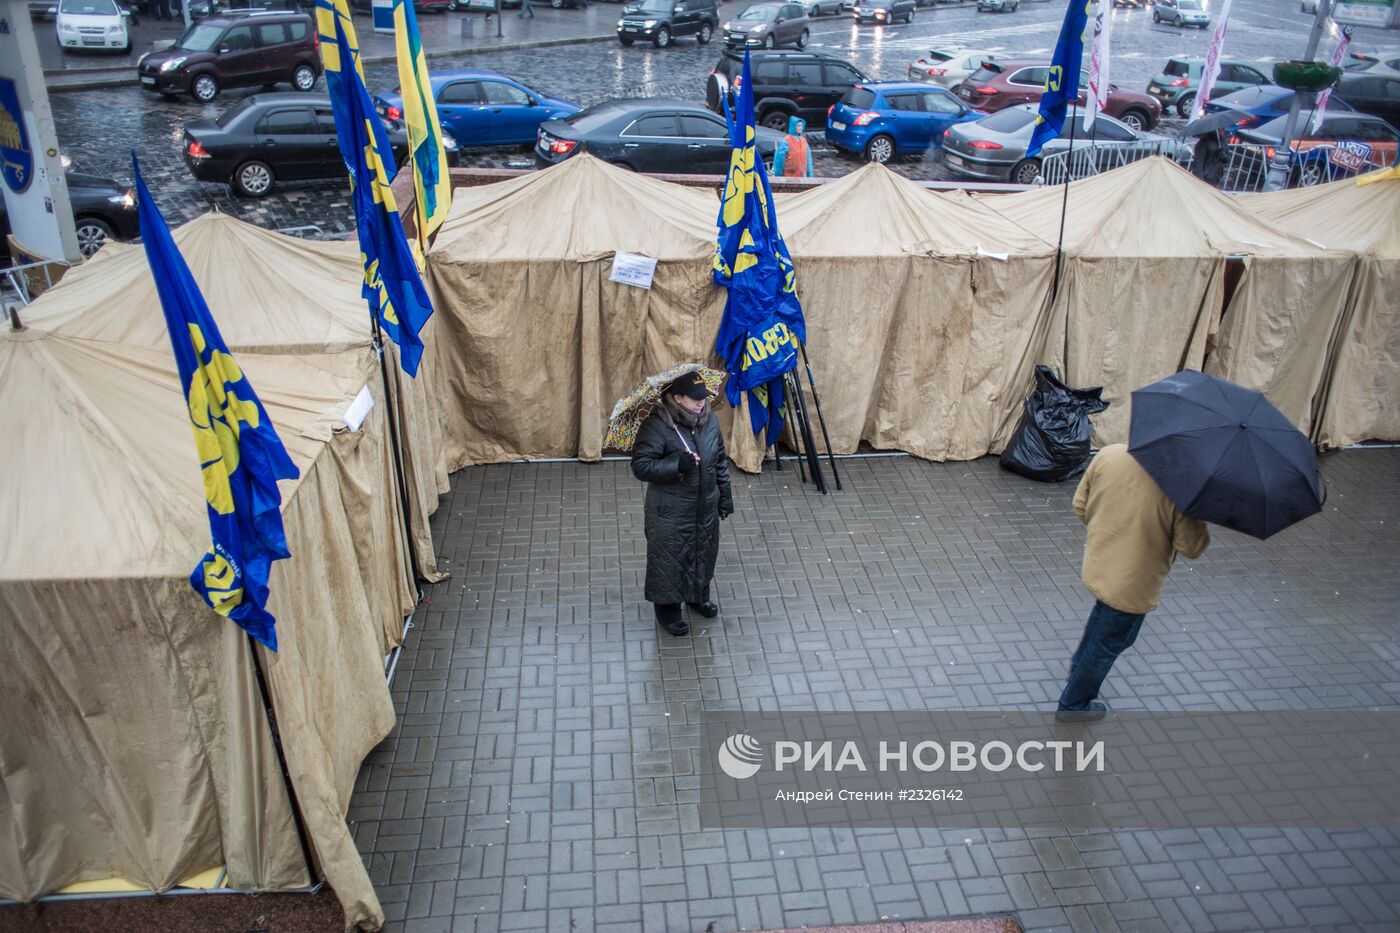 Палаточный лагерь сторонников евроинтеграции Украины